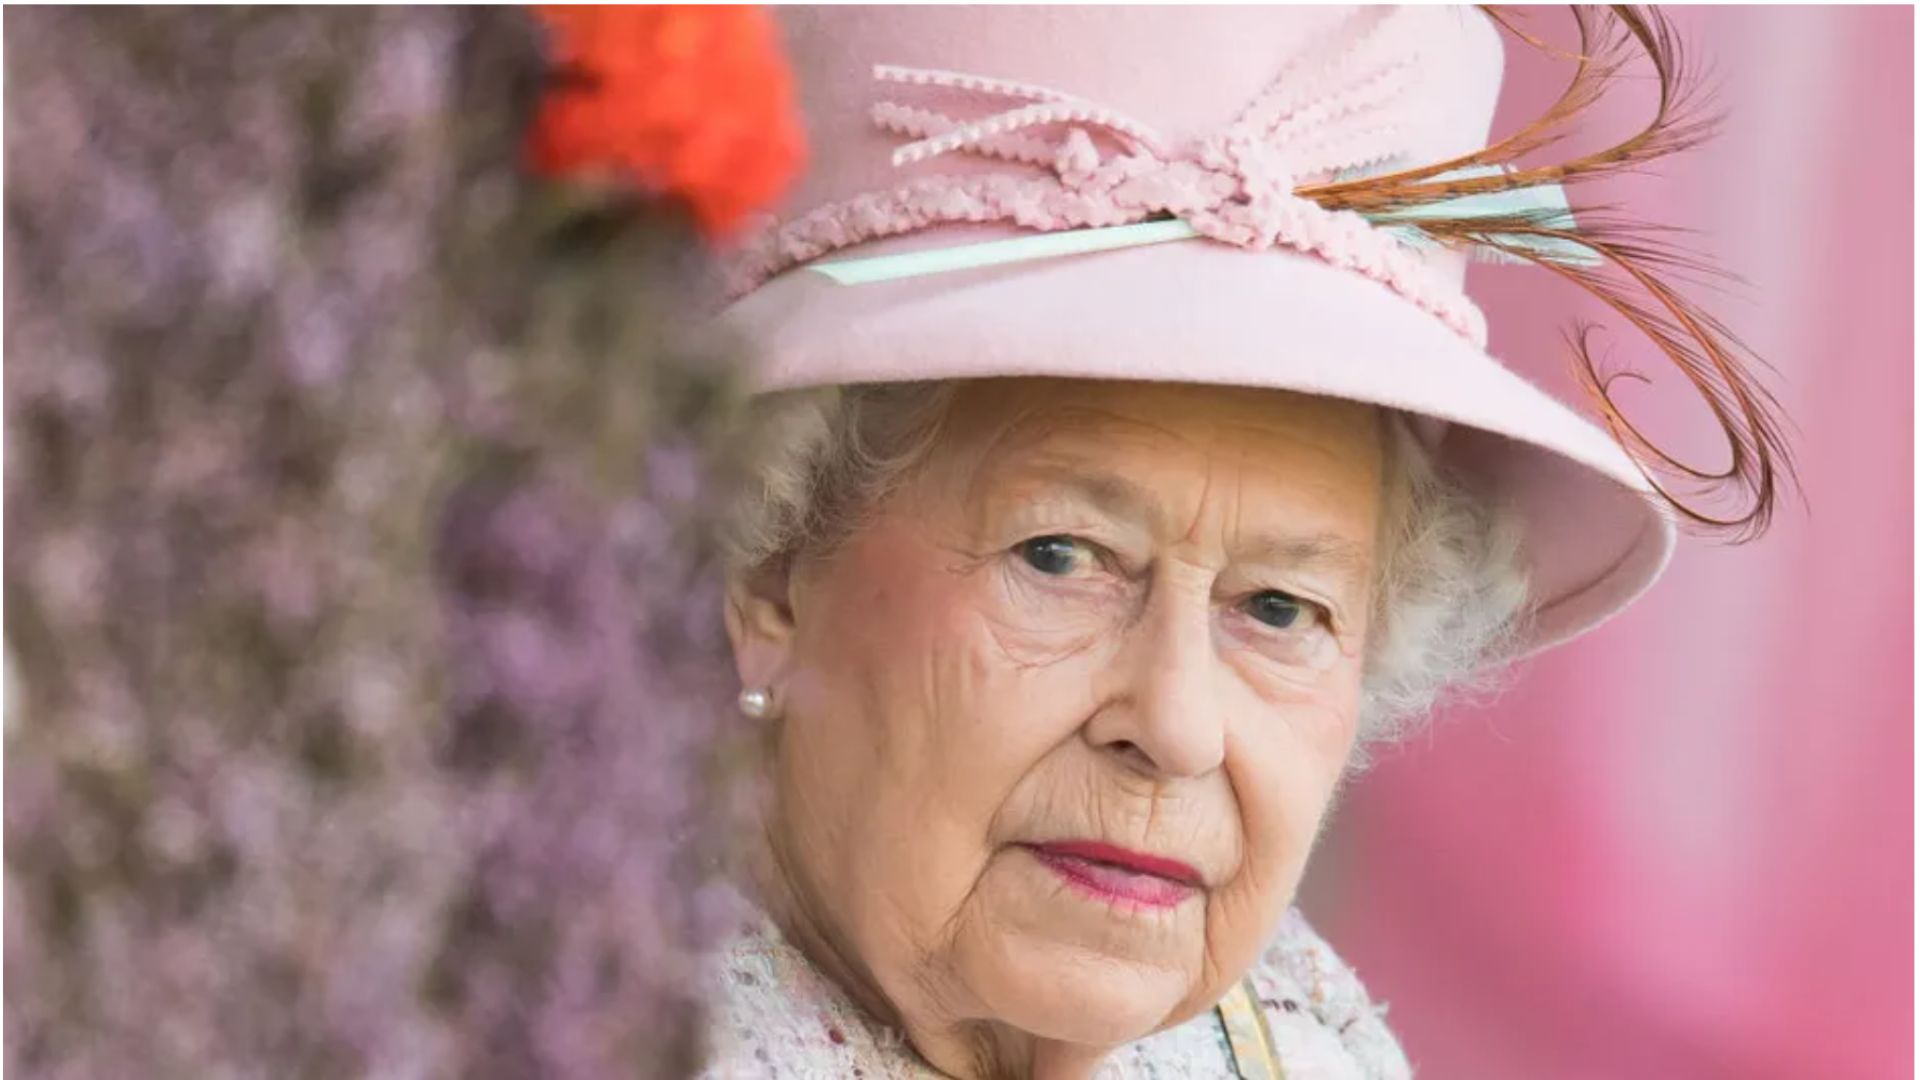 FranceInfo, Français du monde : “Royaume-Uni : les adieux à la Reine“